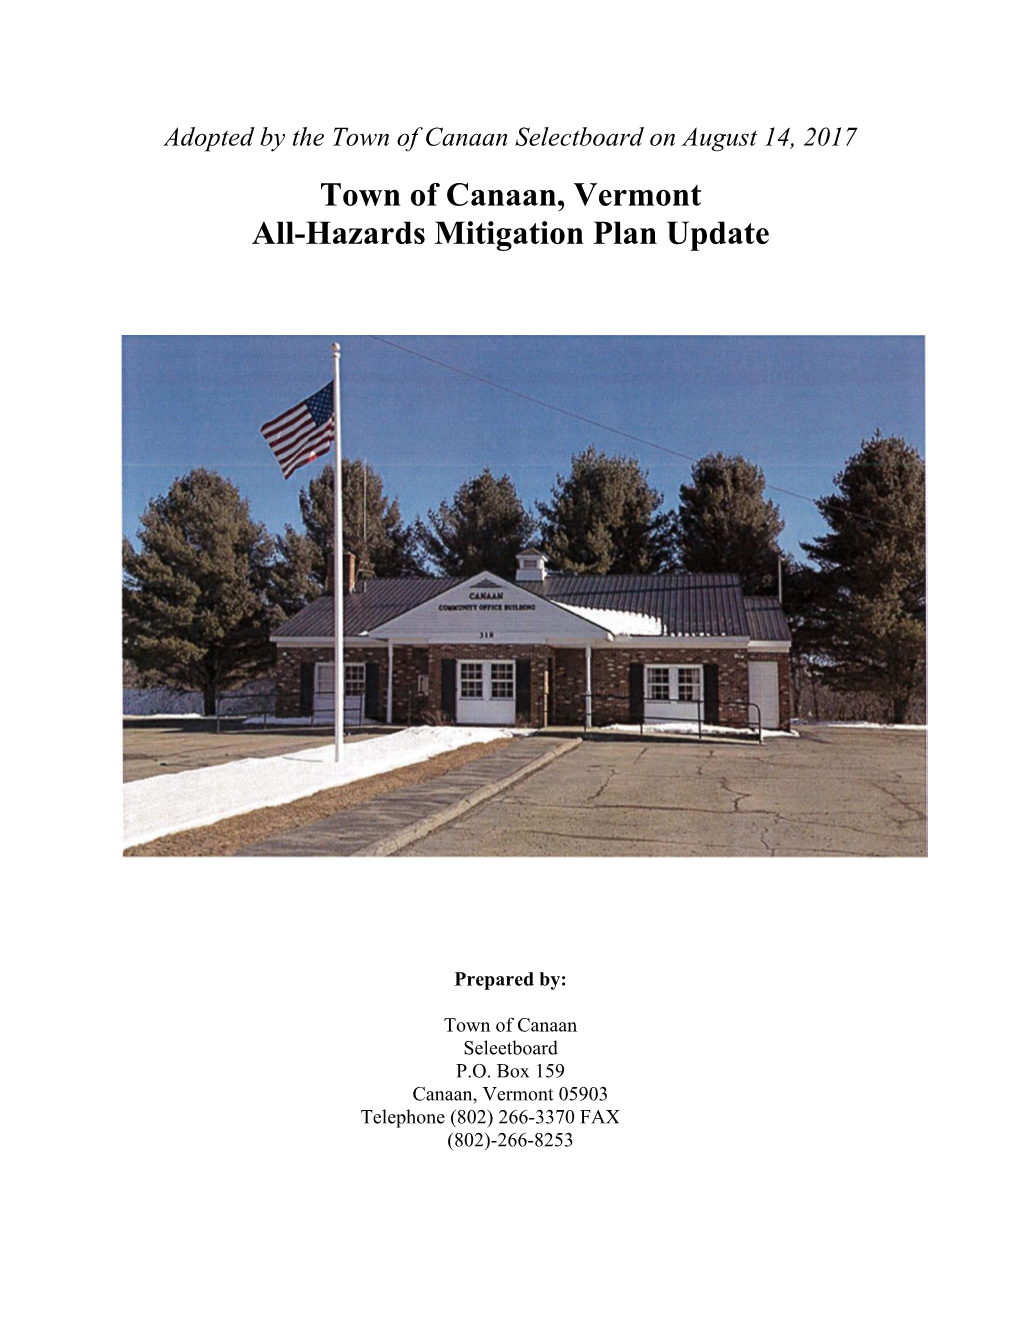 Town of Canaan, Vermont All-Hazards Mitigation Plan Update